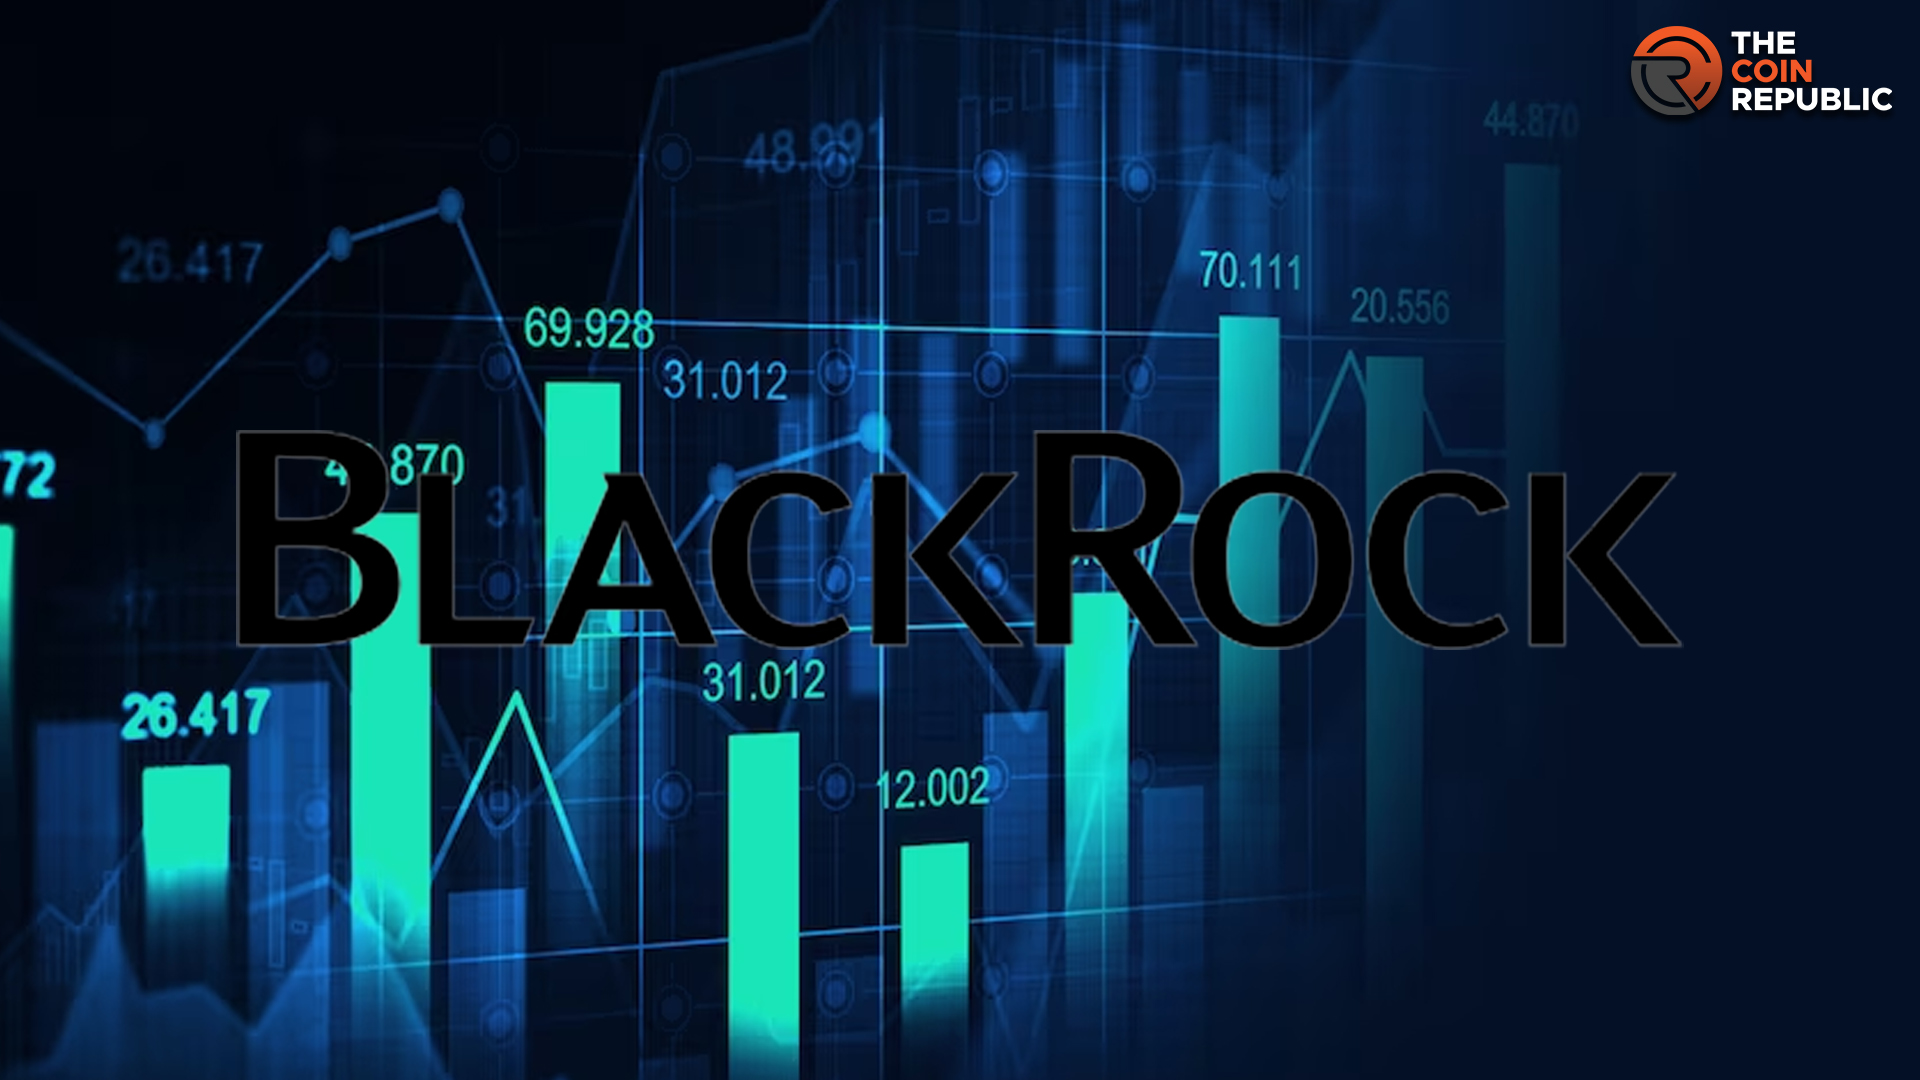 Blackrock Stock Price Prediction: Can BLK Make A Comeback Again?